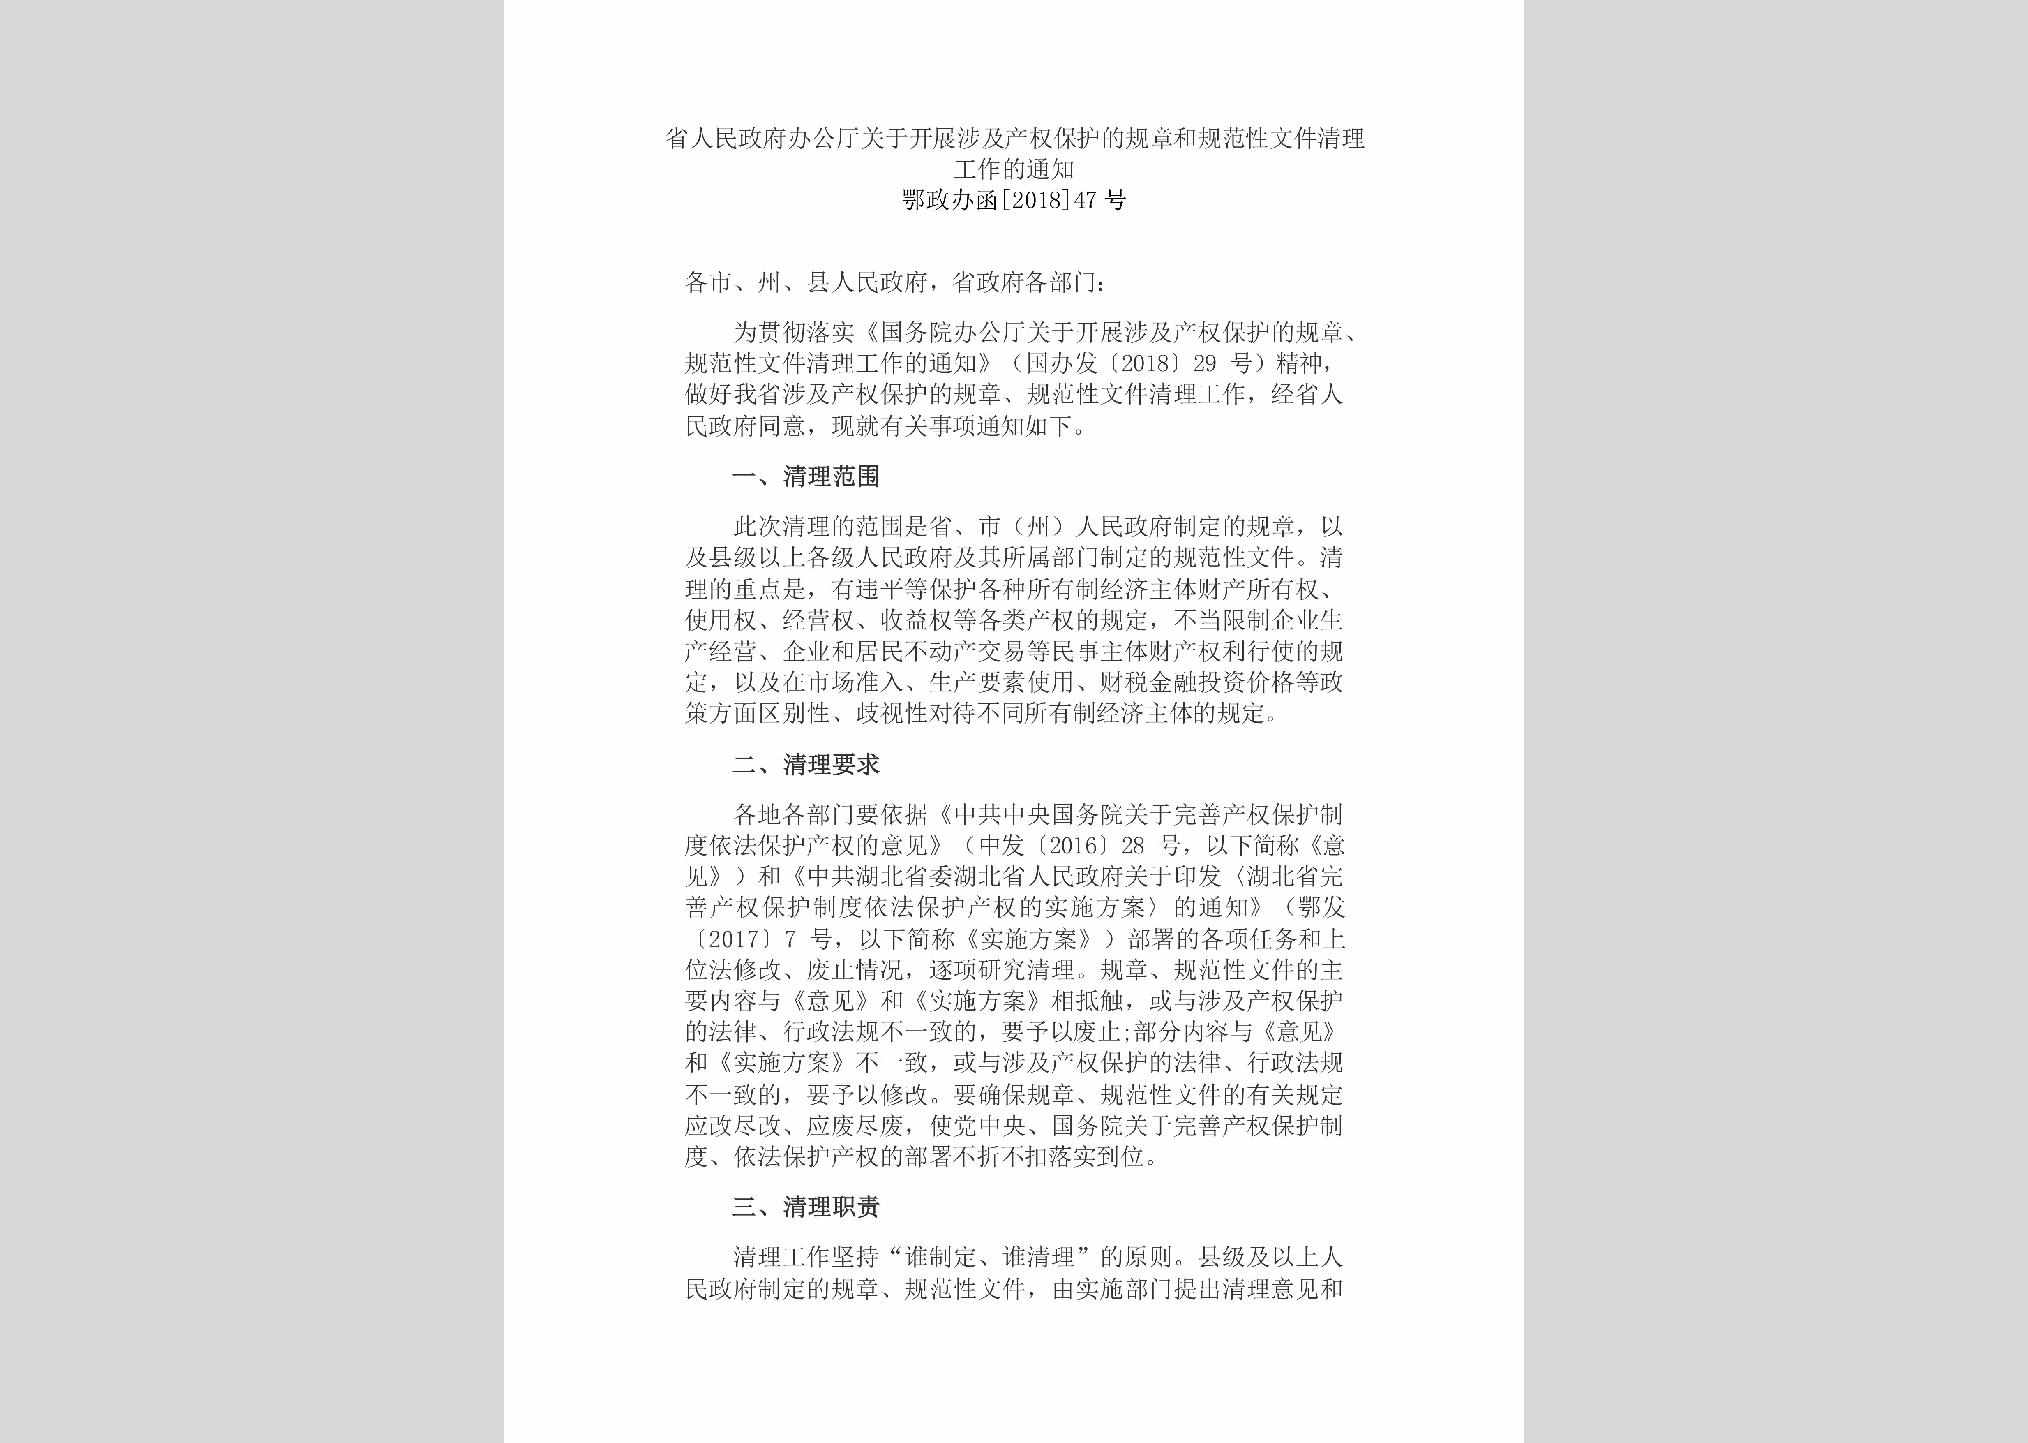 鄂政办函[2018]47号：省人民政府办公厅关于开展涉及产权保护的规章和规范性文件清理工作的通知